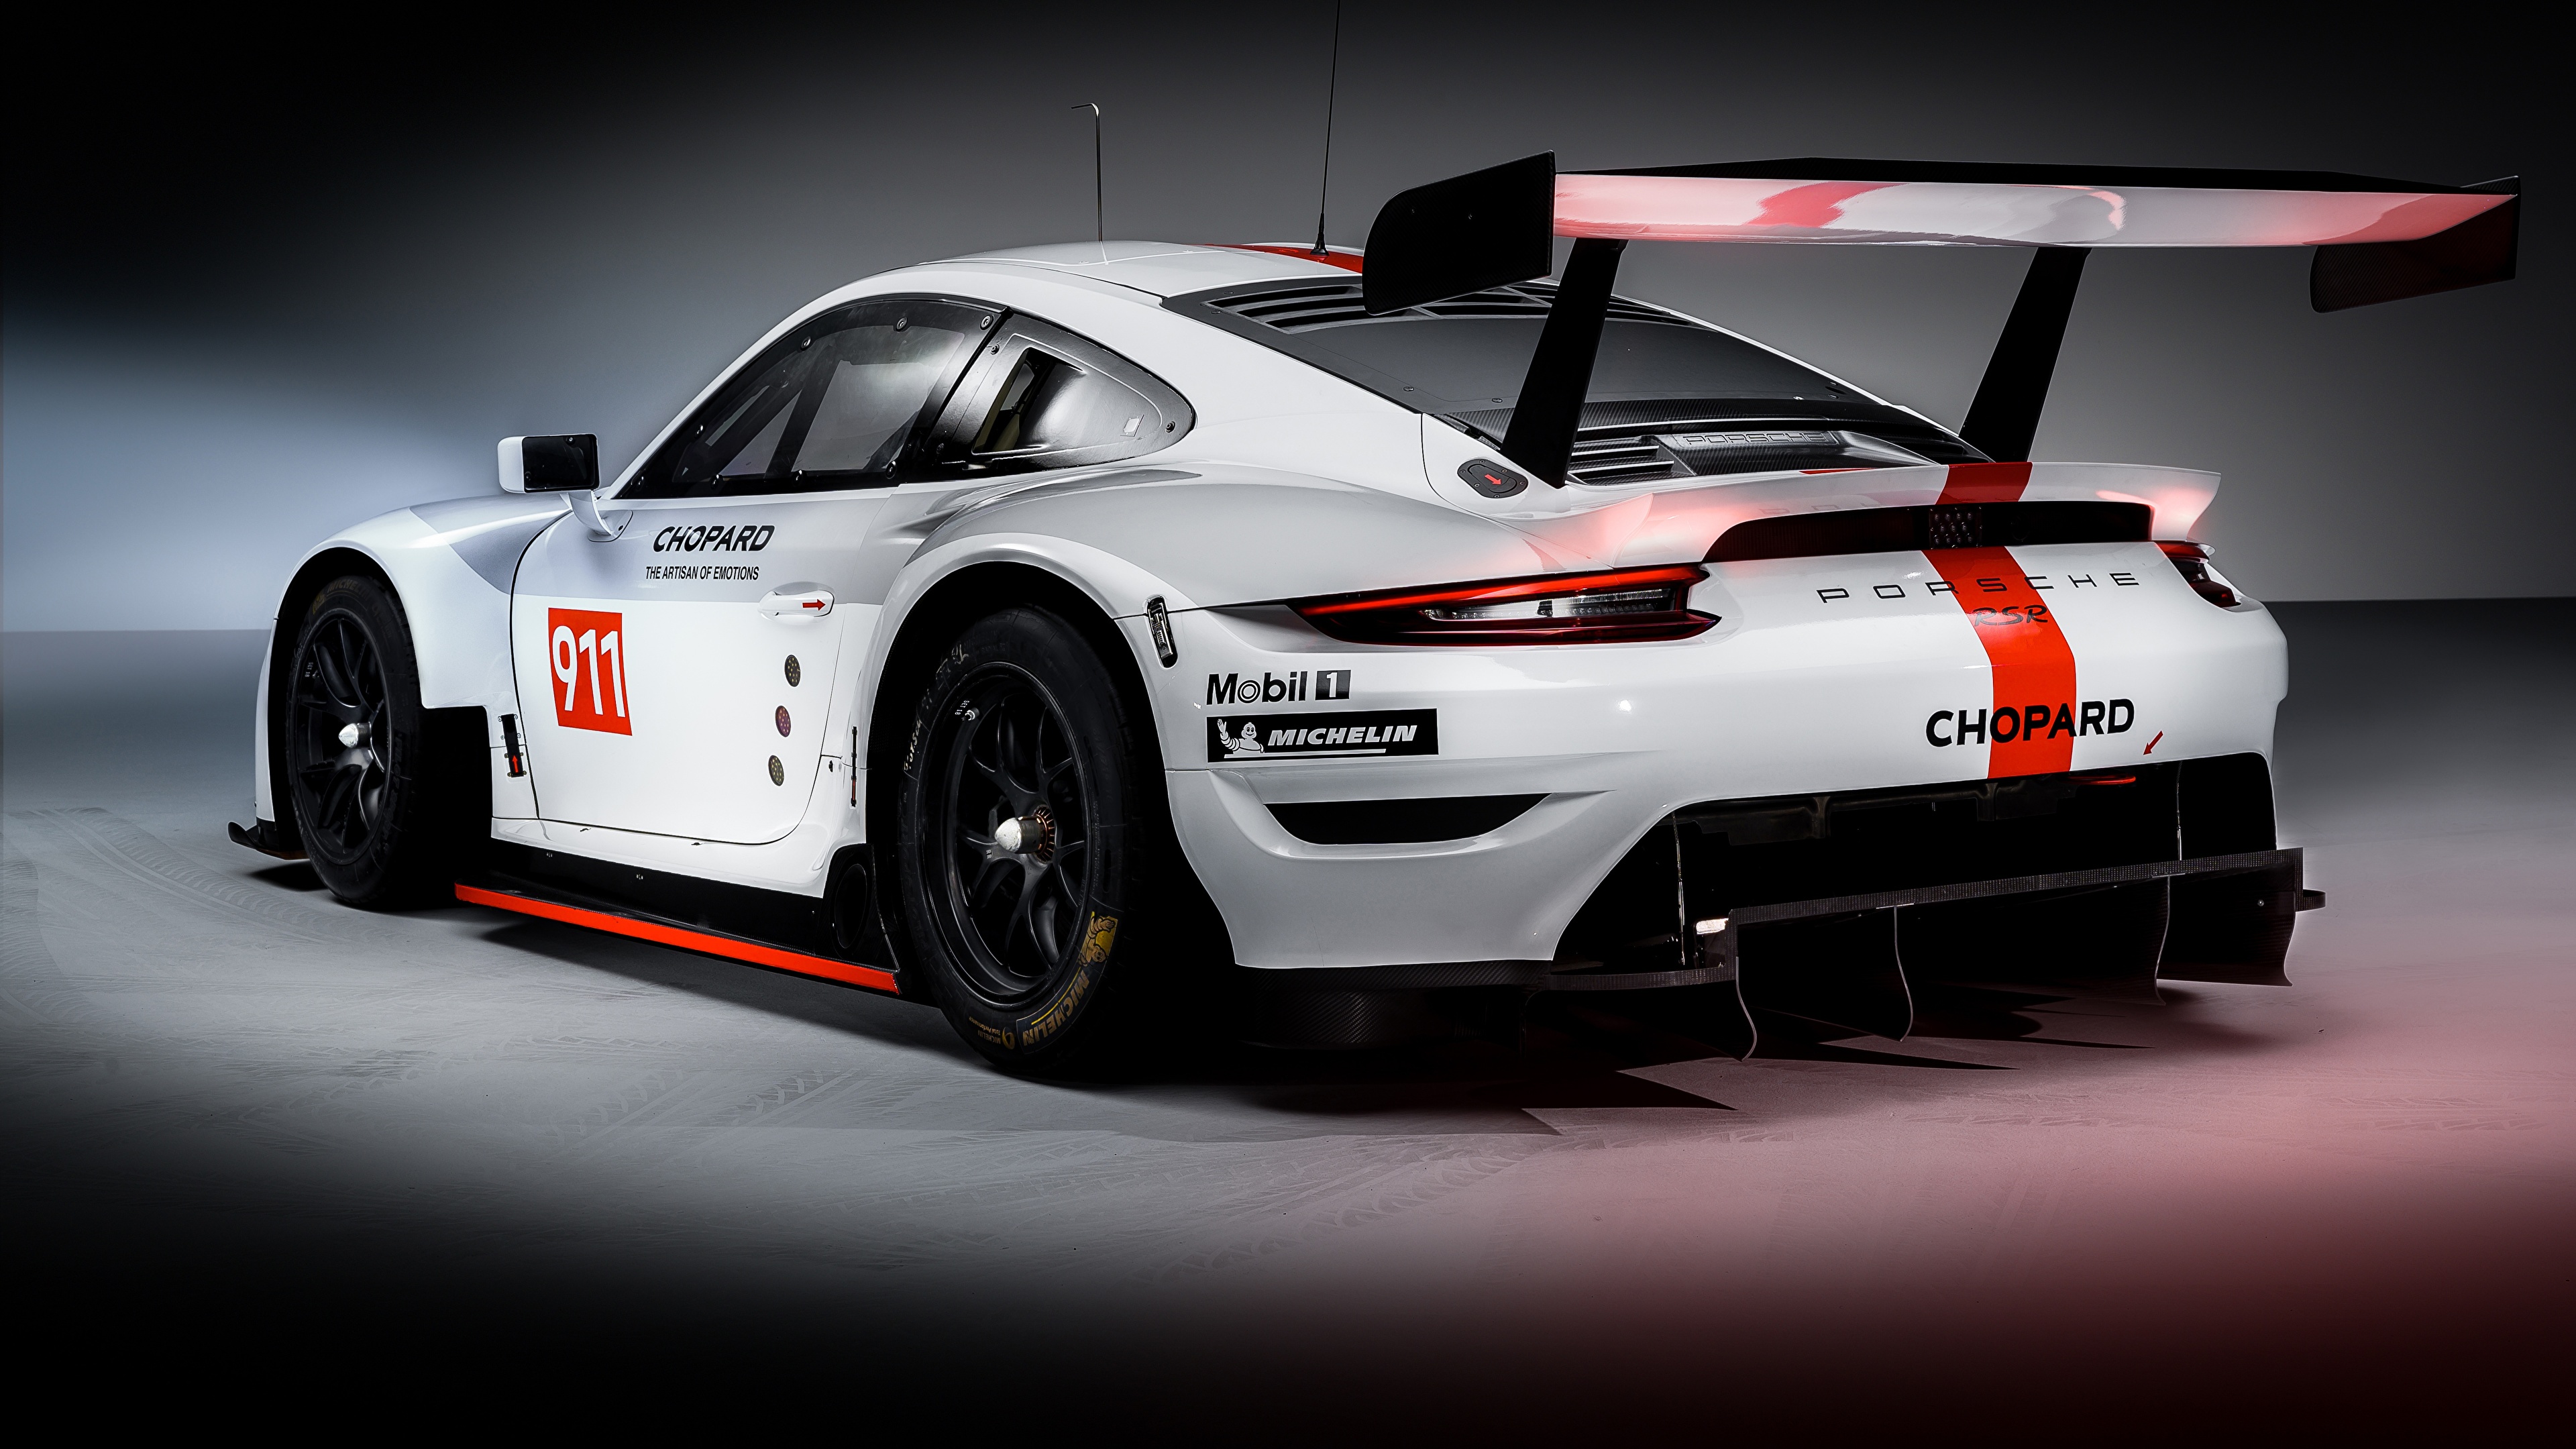 Papeis de parede 3840x2160 Porsche Tuning 911 RSR 2019 Branco De volta ...